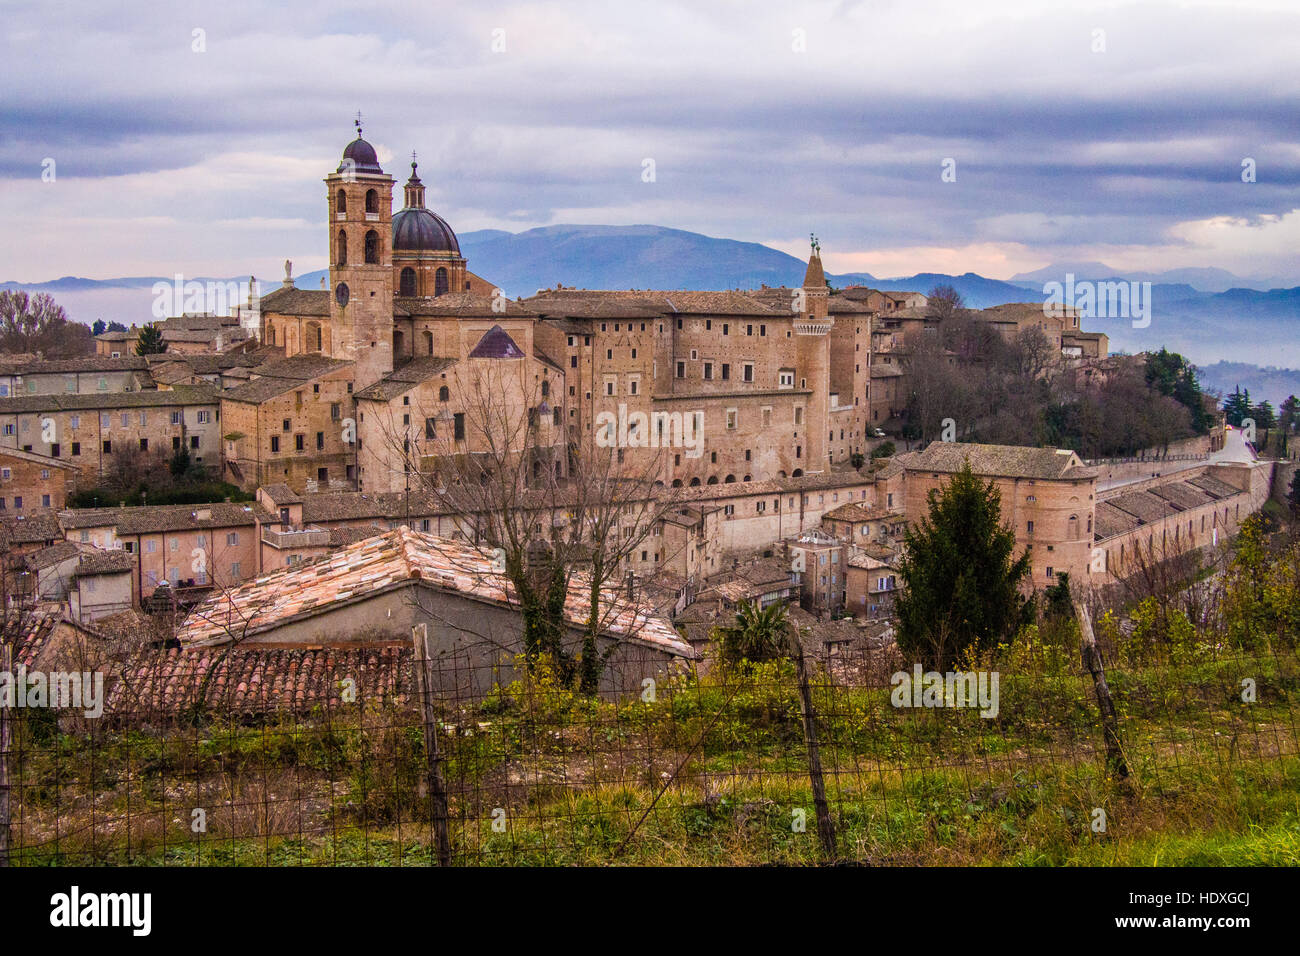 Urbino, une ville médiévale fortifiée dans la région des Marches de l'Italie. Banque D'Images